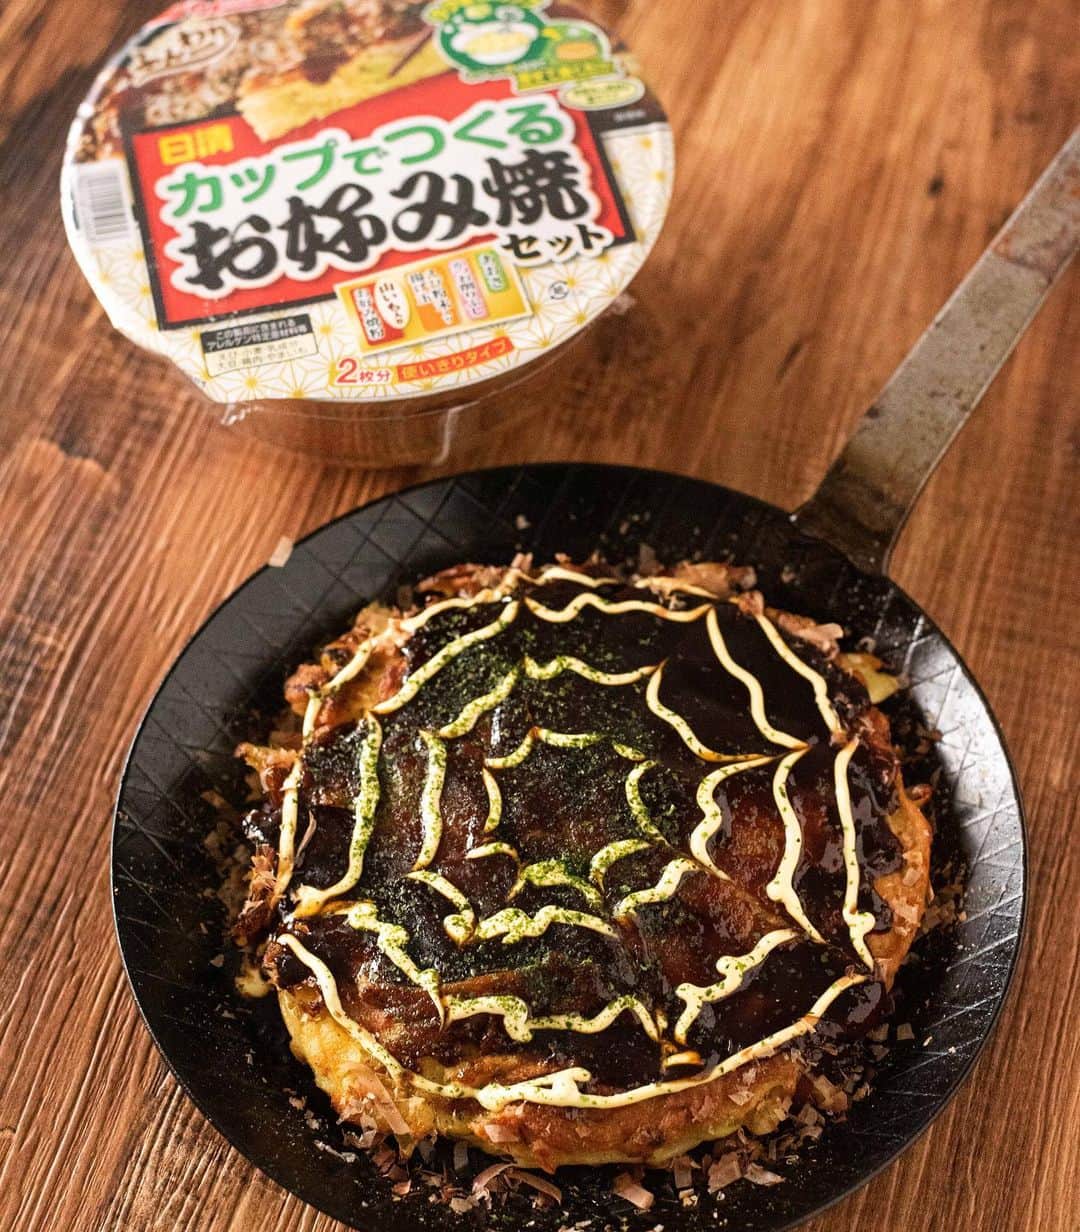 Iguchi Takuto... おうちごはんおじさんさんのインスタグラム写真 - (Iguchi Takuto... おうちごはんおじさんInstagram)「🍳Today’s kitchen﻿ •お好み焼き﻿ 表面はカリッと、中はふわふわ、﻿ めっちゃ美味しいお好み焼き😚﻿ ﻿ 「日清 カップでつくるお好み焼セット」を使って、﻿ お好み焼きを作ったのですが、本当に美味しかった。﻿ しかも、カップで粉を混ぜたりするのが簡潔するので、﻿ 洗い物が減るのも嬉しいポイント。﻿ ﻿ 是非一度お試し下さいね😌﻿ ﻿ 以下、キャンペーンの告知です。﻿ —-﻿ 2020年10月26日～11月7日 カップでつくるお好み焼セットTwitterキャンペーンを実施。﻿ 動画を見て選択肢を選ぶだけで応募可能、抽選で1,000名様にQUOカード1,000円分が当たります。﻿ さらに同時実施で商品購入やこなもん調理投稿でQUOカードが当たるキャンペーン実施中。﻿ （2020年10月26日～2021年1月31日）﻿ —-﻿  「日清 カップでつくるチヂミセット」もあるらしいので、﻿ 今度はチヂミ作ってみよっと😚﻿ ﻿ ﻿ 美味しいで日本を元気に꒰⍨꒱.+*﻿ ﻿ ━…━…━…━…━…━…━…━…━…━﻿ ﻿ ▼.YouTube始めました🍳﻿ 【らくうまチャンネル】と検索して下さい。﻿ 簡単×美味しい料理はもちろん、﻿ <食をエンターテイメントに💐>をテーマに、﻿ 楽しいコンテンツをたくさん投稿していきます！﻿ 是非チャンネル登録お願いします🙇‍♂️﻿ https://www.youtube.com/channel/UCU8N32A-DZ4aGMH1YZ06gYA﻿ ﻿ ▼.料理教室主宰しています🍳(..開講祝1年💐)﻿ Foodies Labo(@foodies_labo)﻿ 簡単×美味しいに拘り、都内で料理教室を開催しています。﻿ 料理初心者•初参加の方•お友達との参加も大歓迎🙆‍♂️🙆‍♀️﻿ まずは気軽にフォローして下さい！﻿ ﻿ ▼.デリバリー専門のレストランを始めました🍴 ﻿ Foodies Tokyo(@foodies_tokyo)﻿ 不定期での営業となりますが、﻿ Uber Eatsに出店しています！﻿ イベントなども都度行っていますので、﻿ 詳しくは、公式アカウントをご覧下さい！﻿ ﻿ ▼.ストーリーズのハイライトをまとめました🎥﻿ 過去にストーリーズで配信した、イベントの様子や、﻿ 企業さまとのお仕事、日々の料理のシーン、﻿ 自身の掲載記事など、アイコン毎にまとめています。﻿ ご興味ある方はご覧下さい！﻿ ﻿ ━…━…━…━…━…━…━…━…━…━﻿ #カップでつくるお好み焼 #PR #日清フーズ  #栄養バランス﻿ #簡単 #便利 #おいしい #こなもんQUOカードプレゼントキャンペーン ﻿ #らくうま飯#らくうま料理#らくうま料理家#らくうま料理研究家#料理家#料理研究家#フードスタイリスト#井口タクト#おうちごはん#おうちごはんおじさん#家庭料理#簡単料理#時短料理#簡単ごはん#料理記録#飯テロ#料理好きな人と繋がりたい #お好み焼き #Foodstylist#ouchigohan_ojisan#japanesefood」10月28日 19時03分 - ouchigohan_ojisan